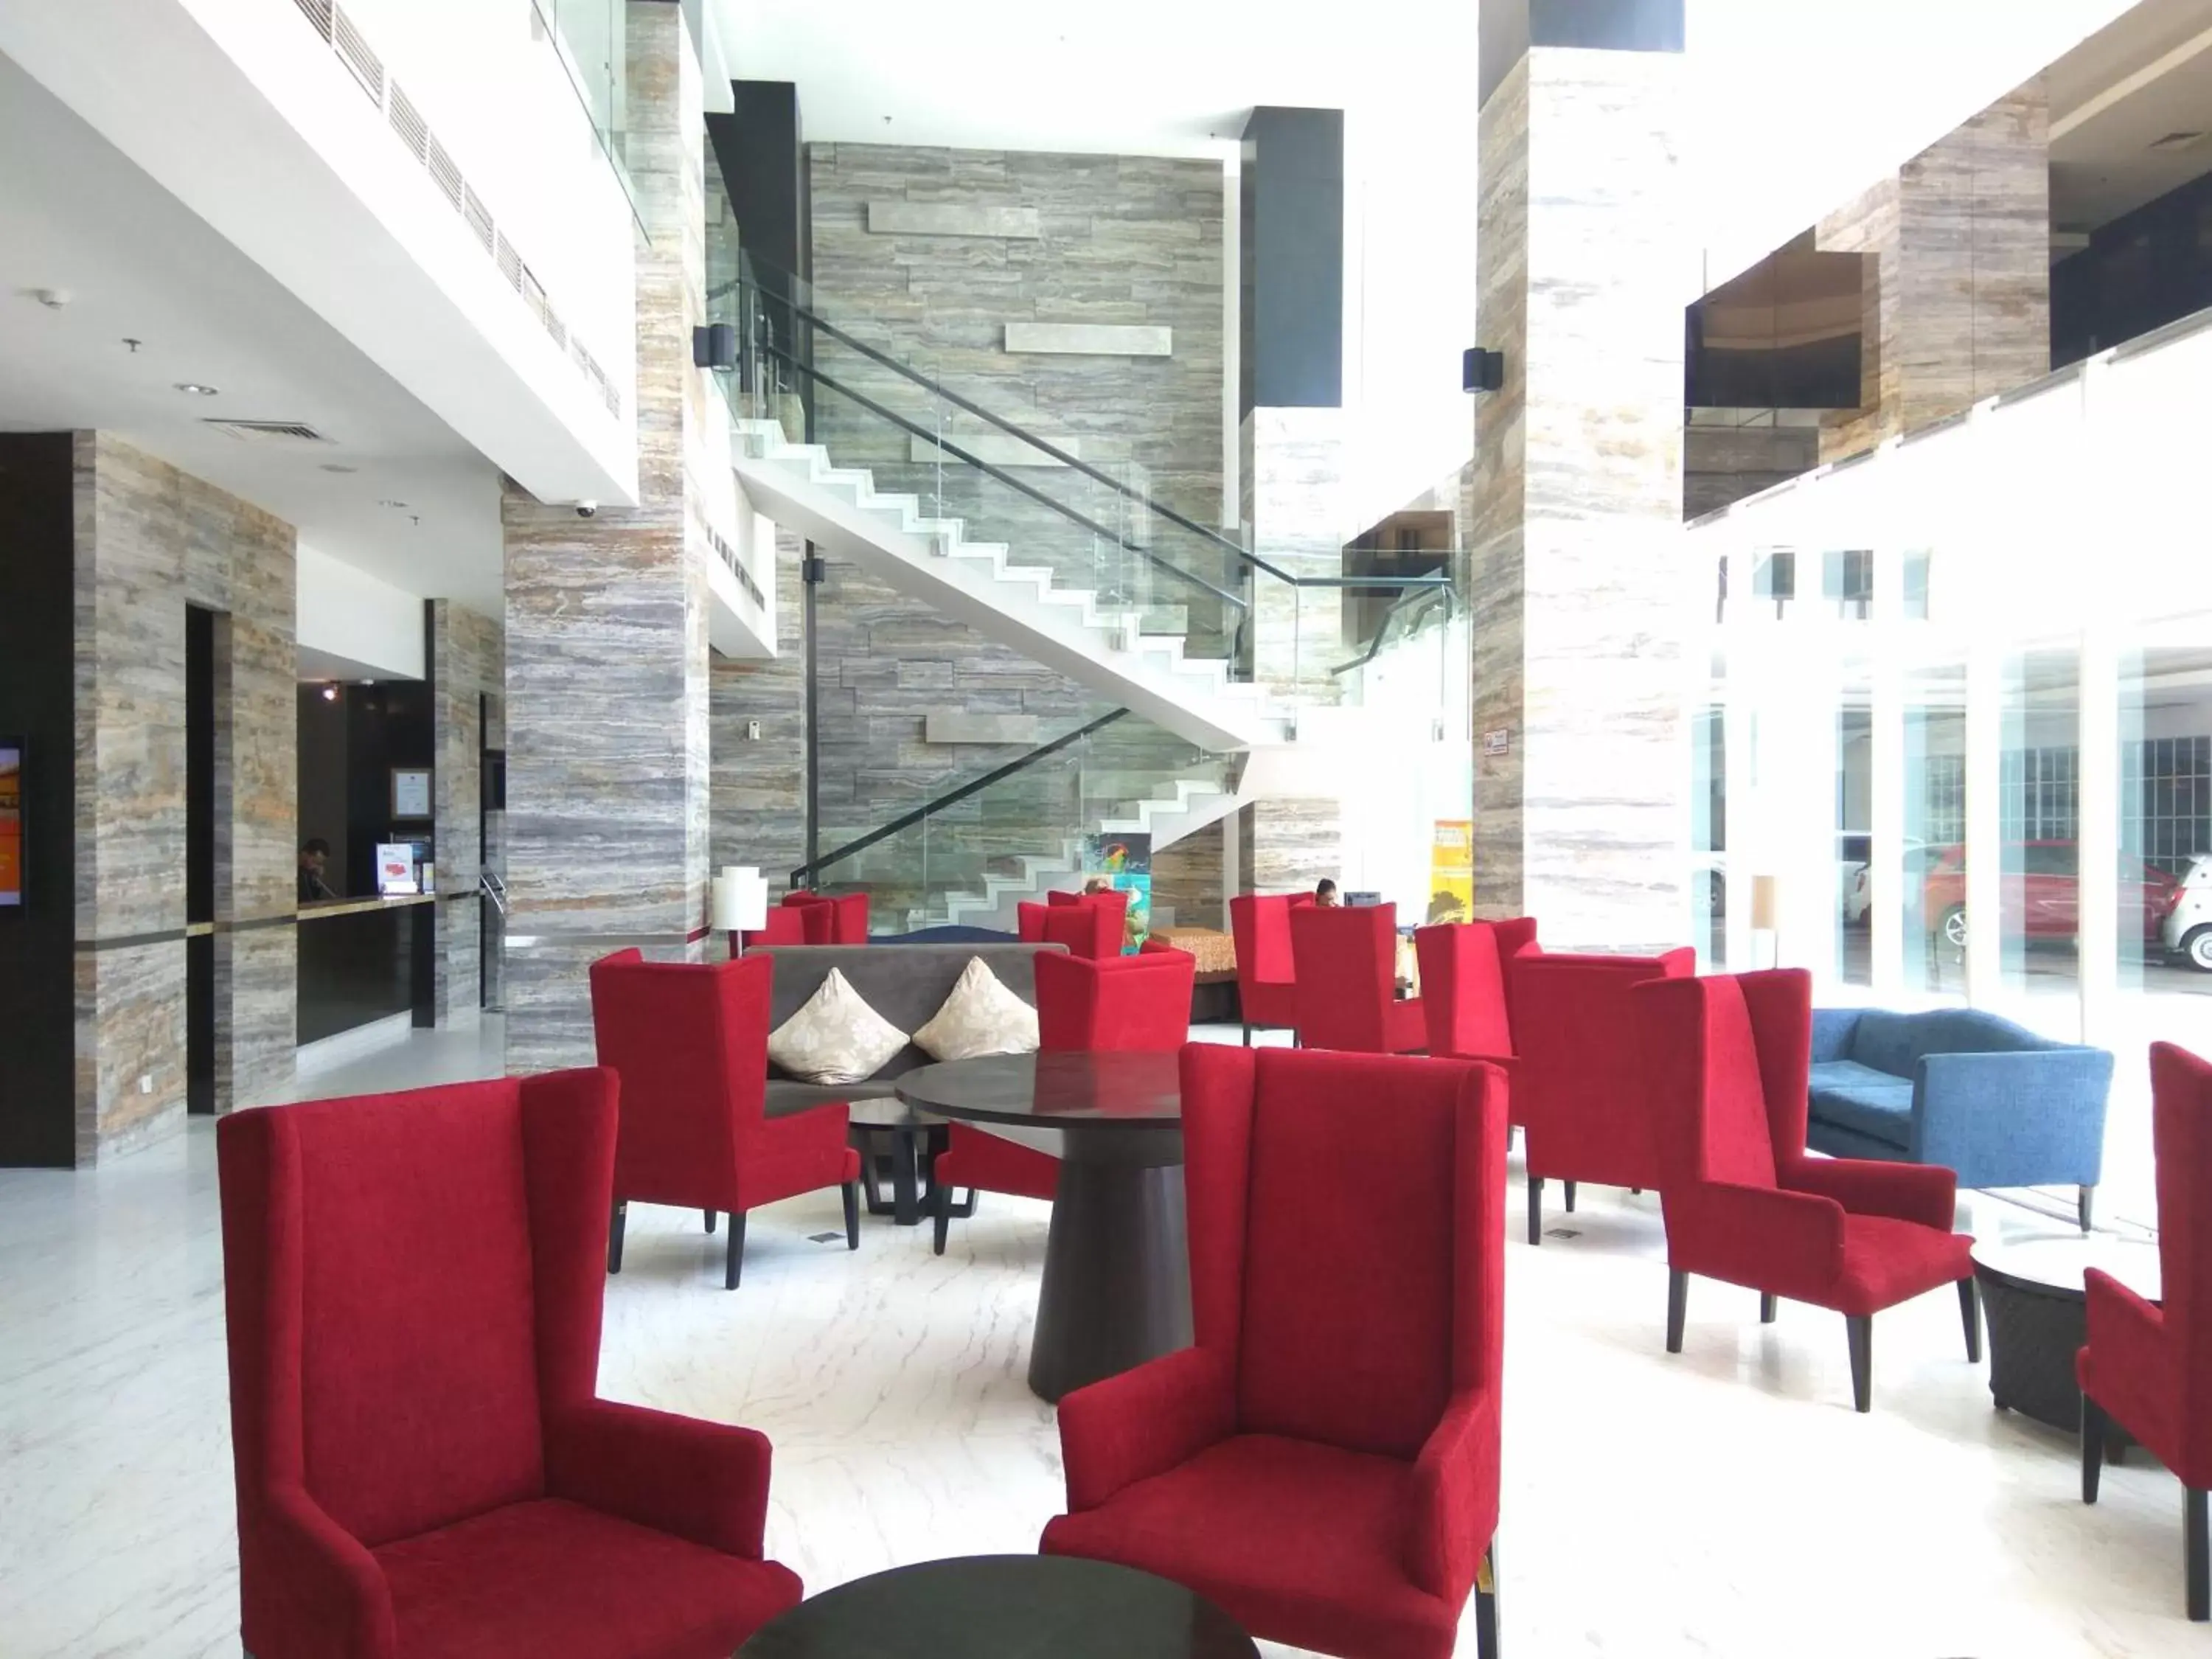 Lobby or reception in Swiss-Belhotel Balikpapan